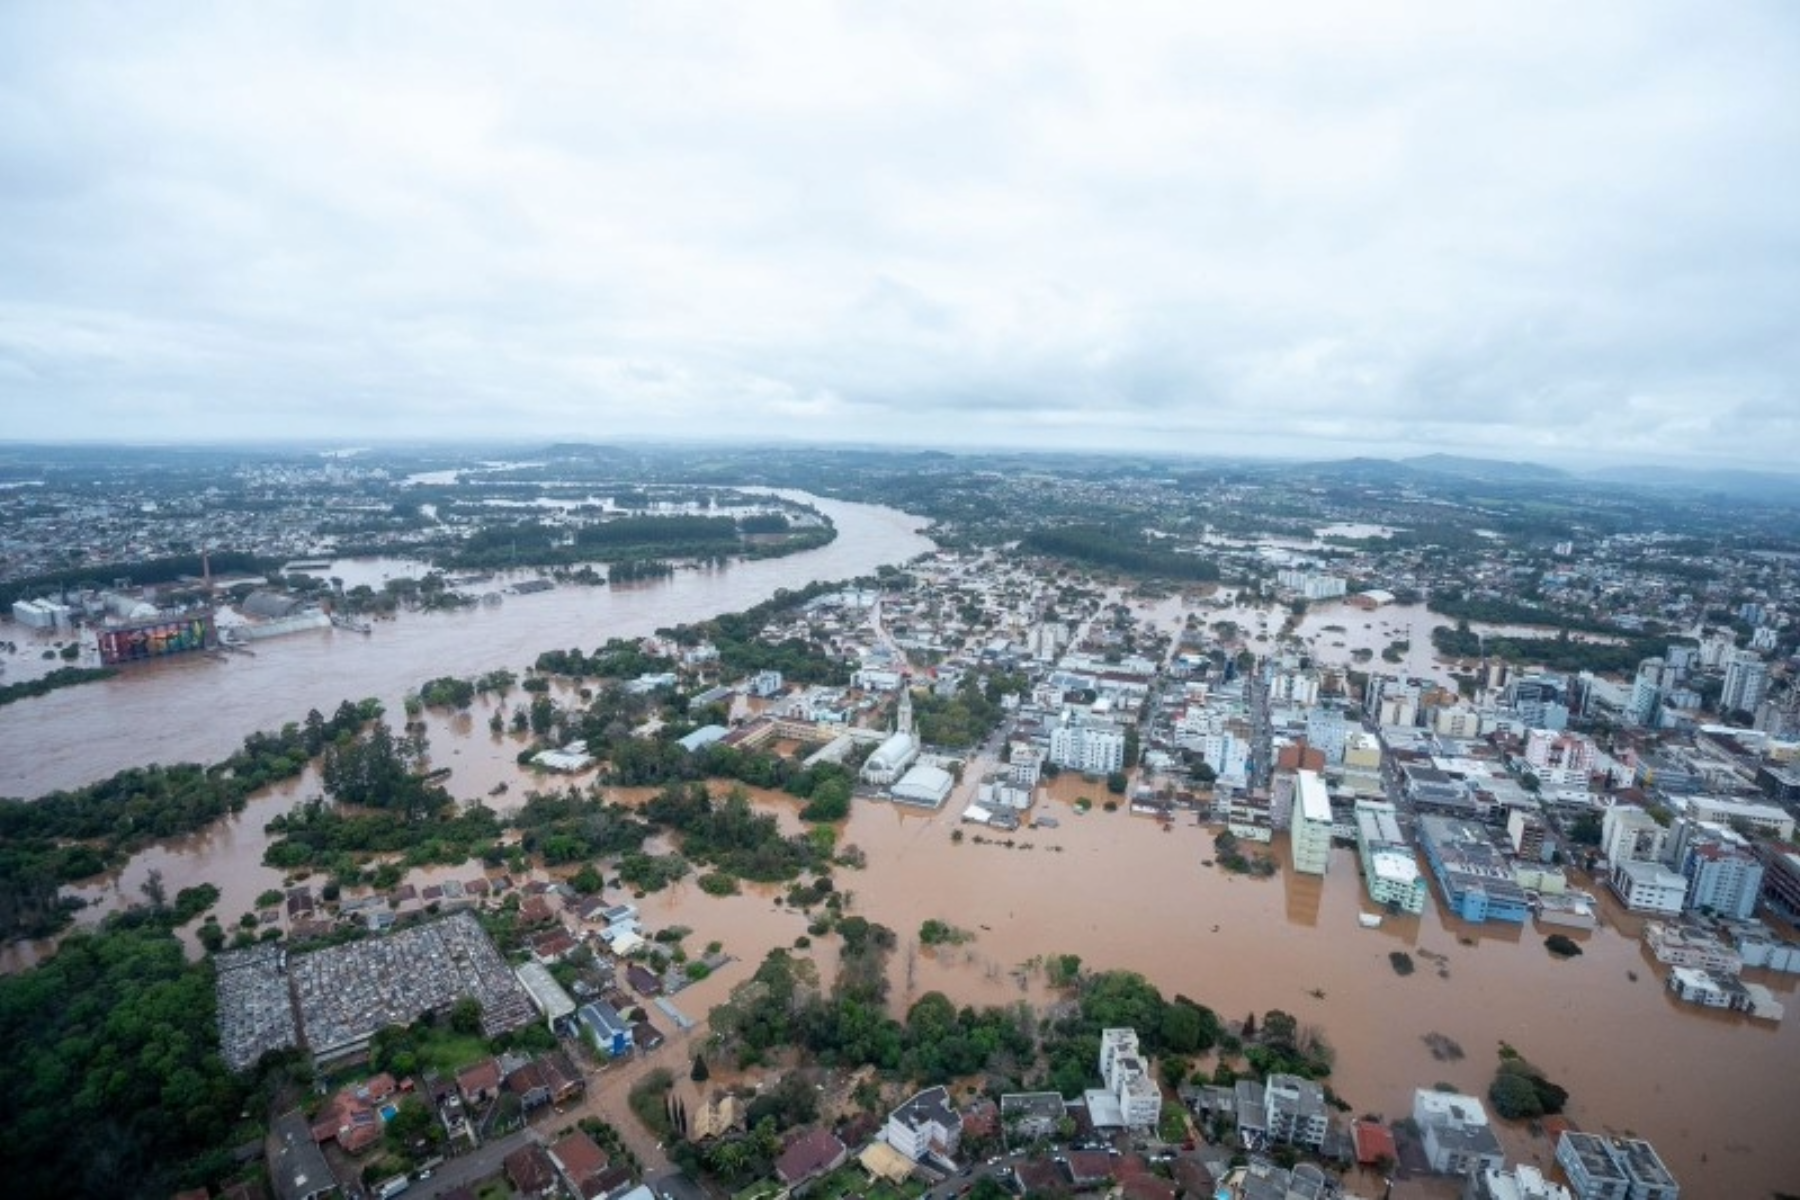 Municípios de Estrela e Lageado inundados pelo Rio Taquari: destruição de matas ciliares e avanço urbano desordenado agravaram desastre climático (Foto: Maurício Tonetto / GOV-RS)